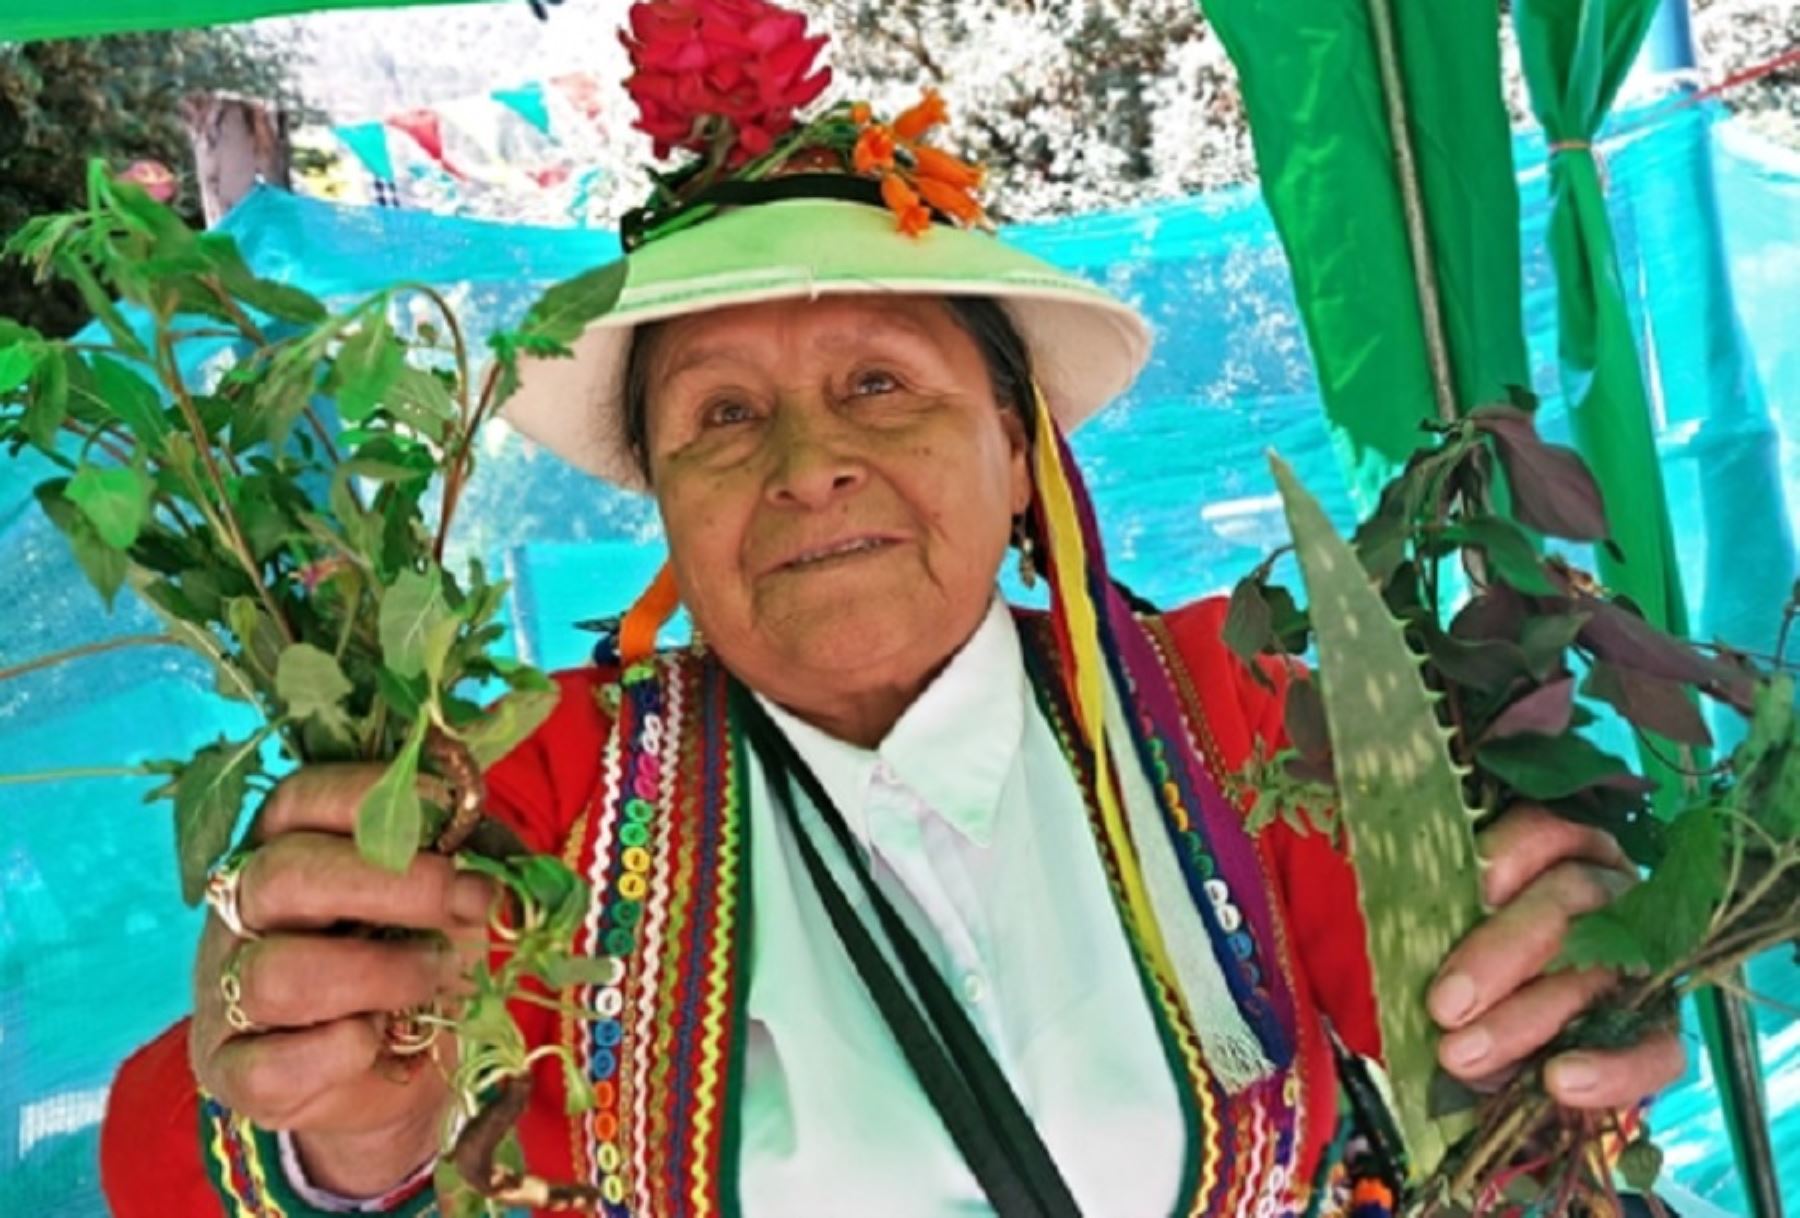 A sus 77 años recién cumplidos, doña Rosa continúa brindando sus servicios de sanadora herbolaria en su hogar o a domicilio en el distrito de Tambobamba, provincia de Cotabambas, departamento de Apurímac.